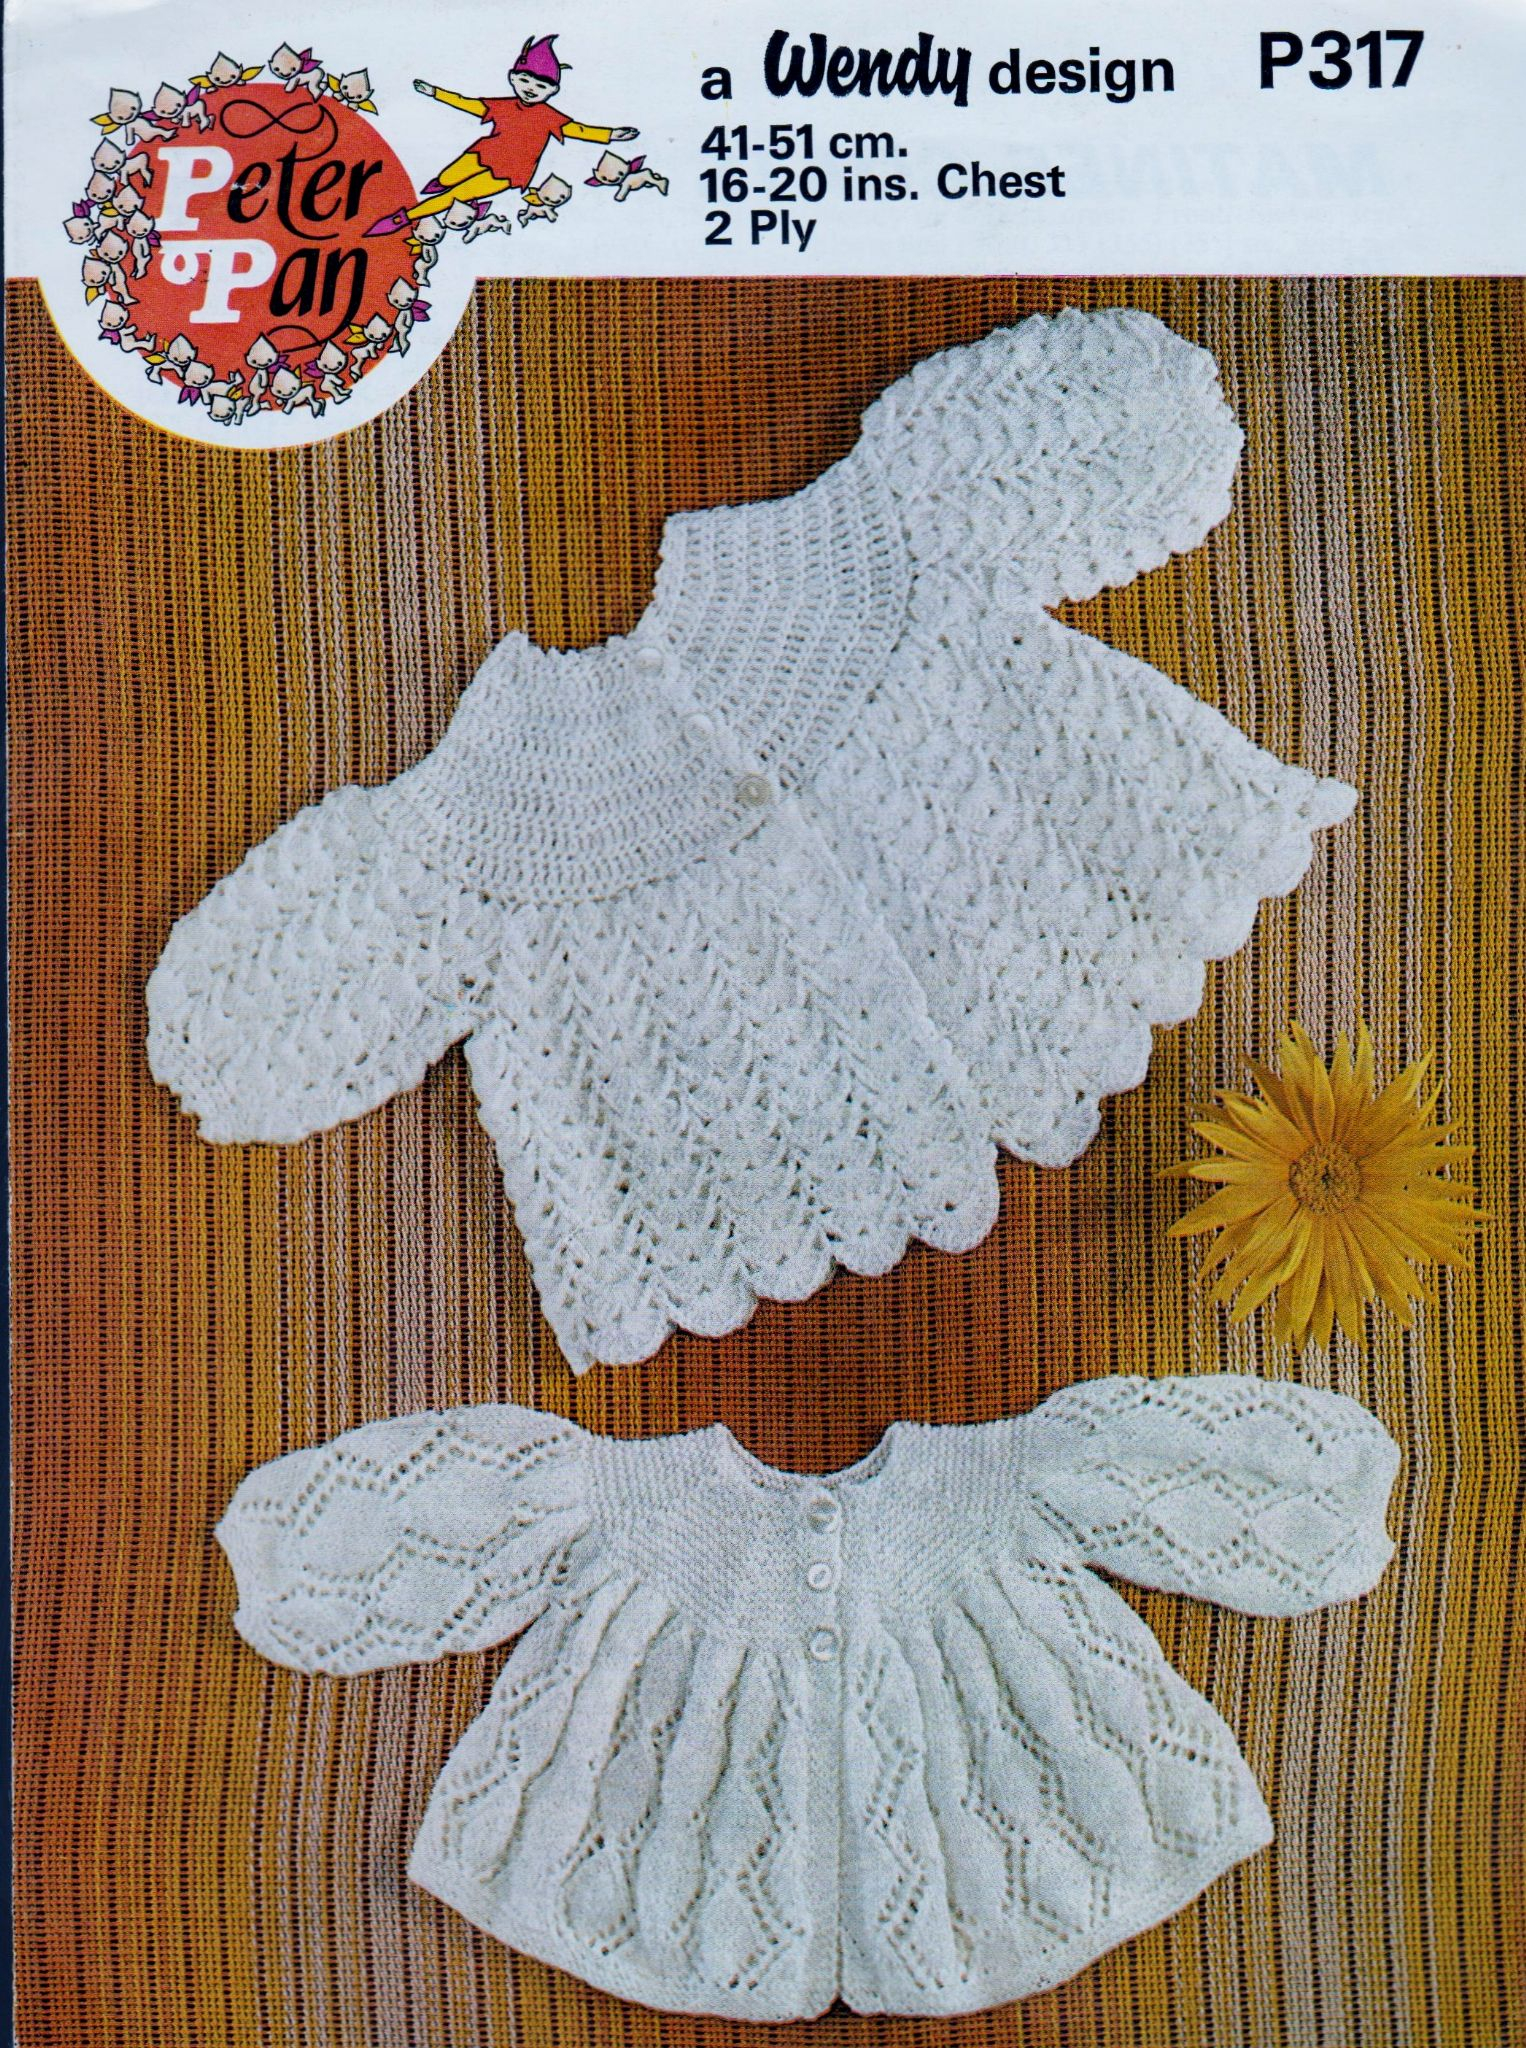 Wing Crochet Pattern Original Ba Crochet Pattern Peter Pan P317 In 2 Ply Yarn 16 20